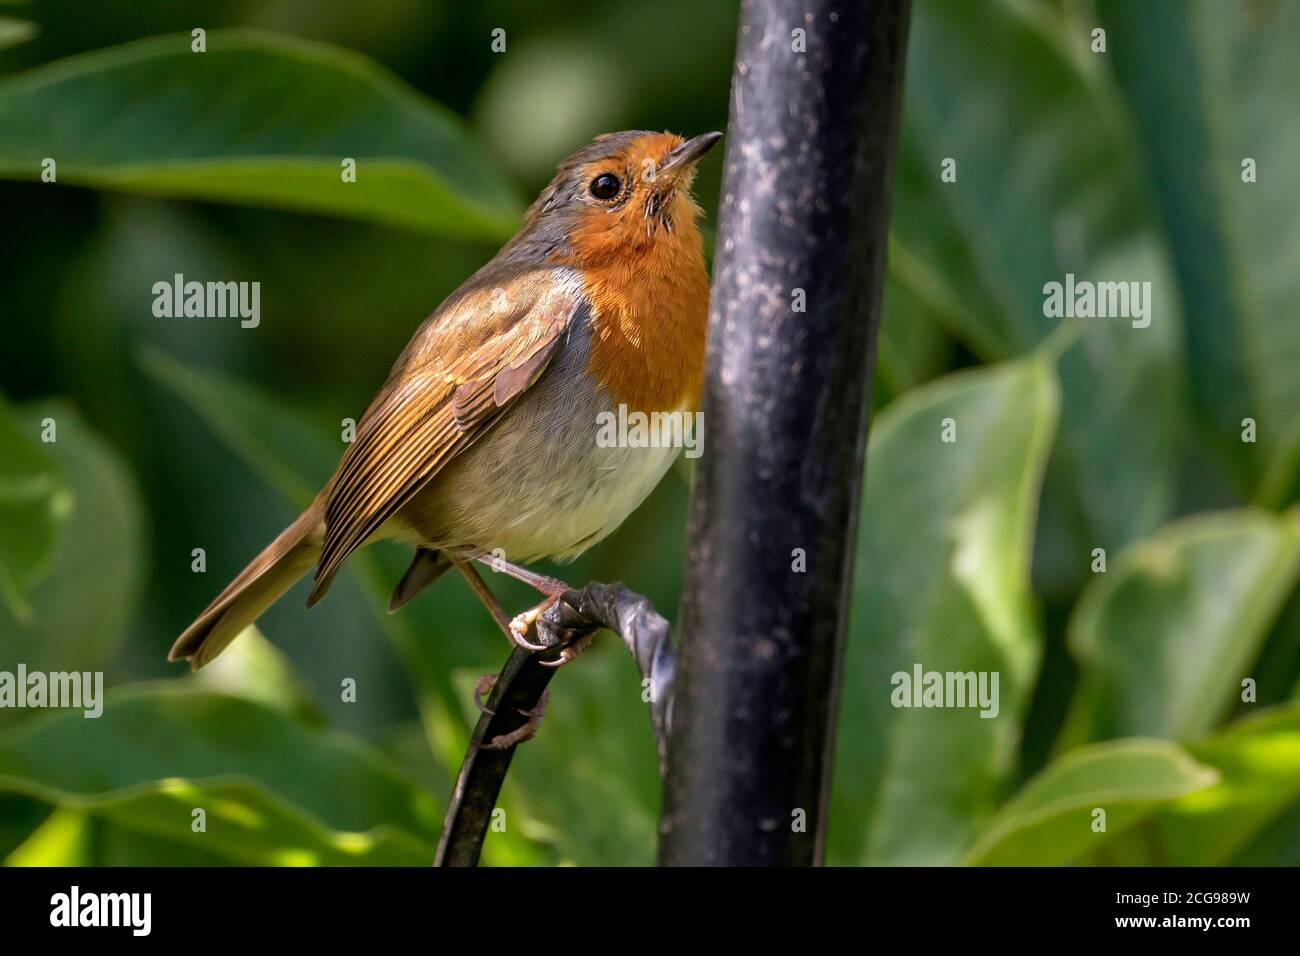 Common garden bird the robin. Stock Photo